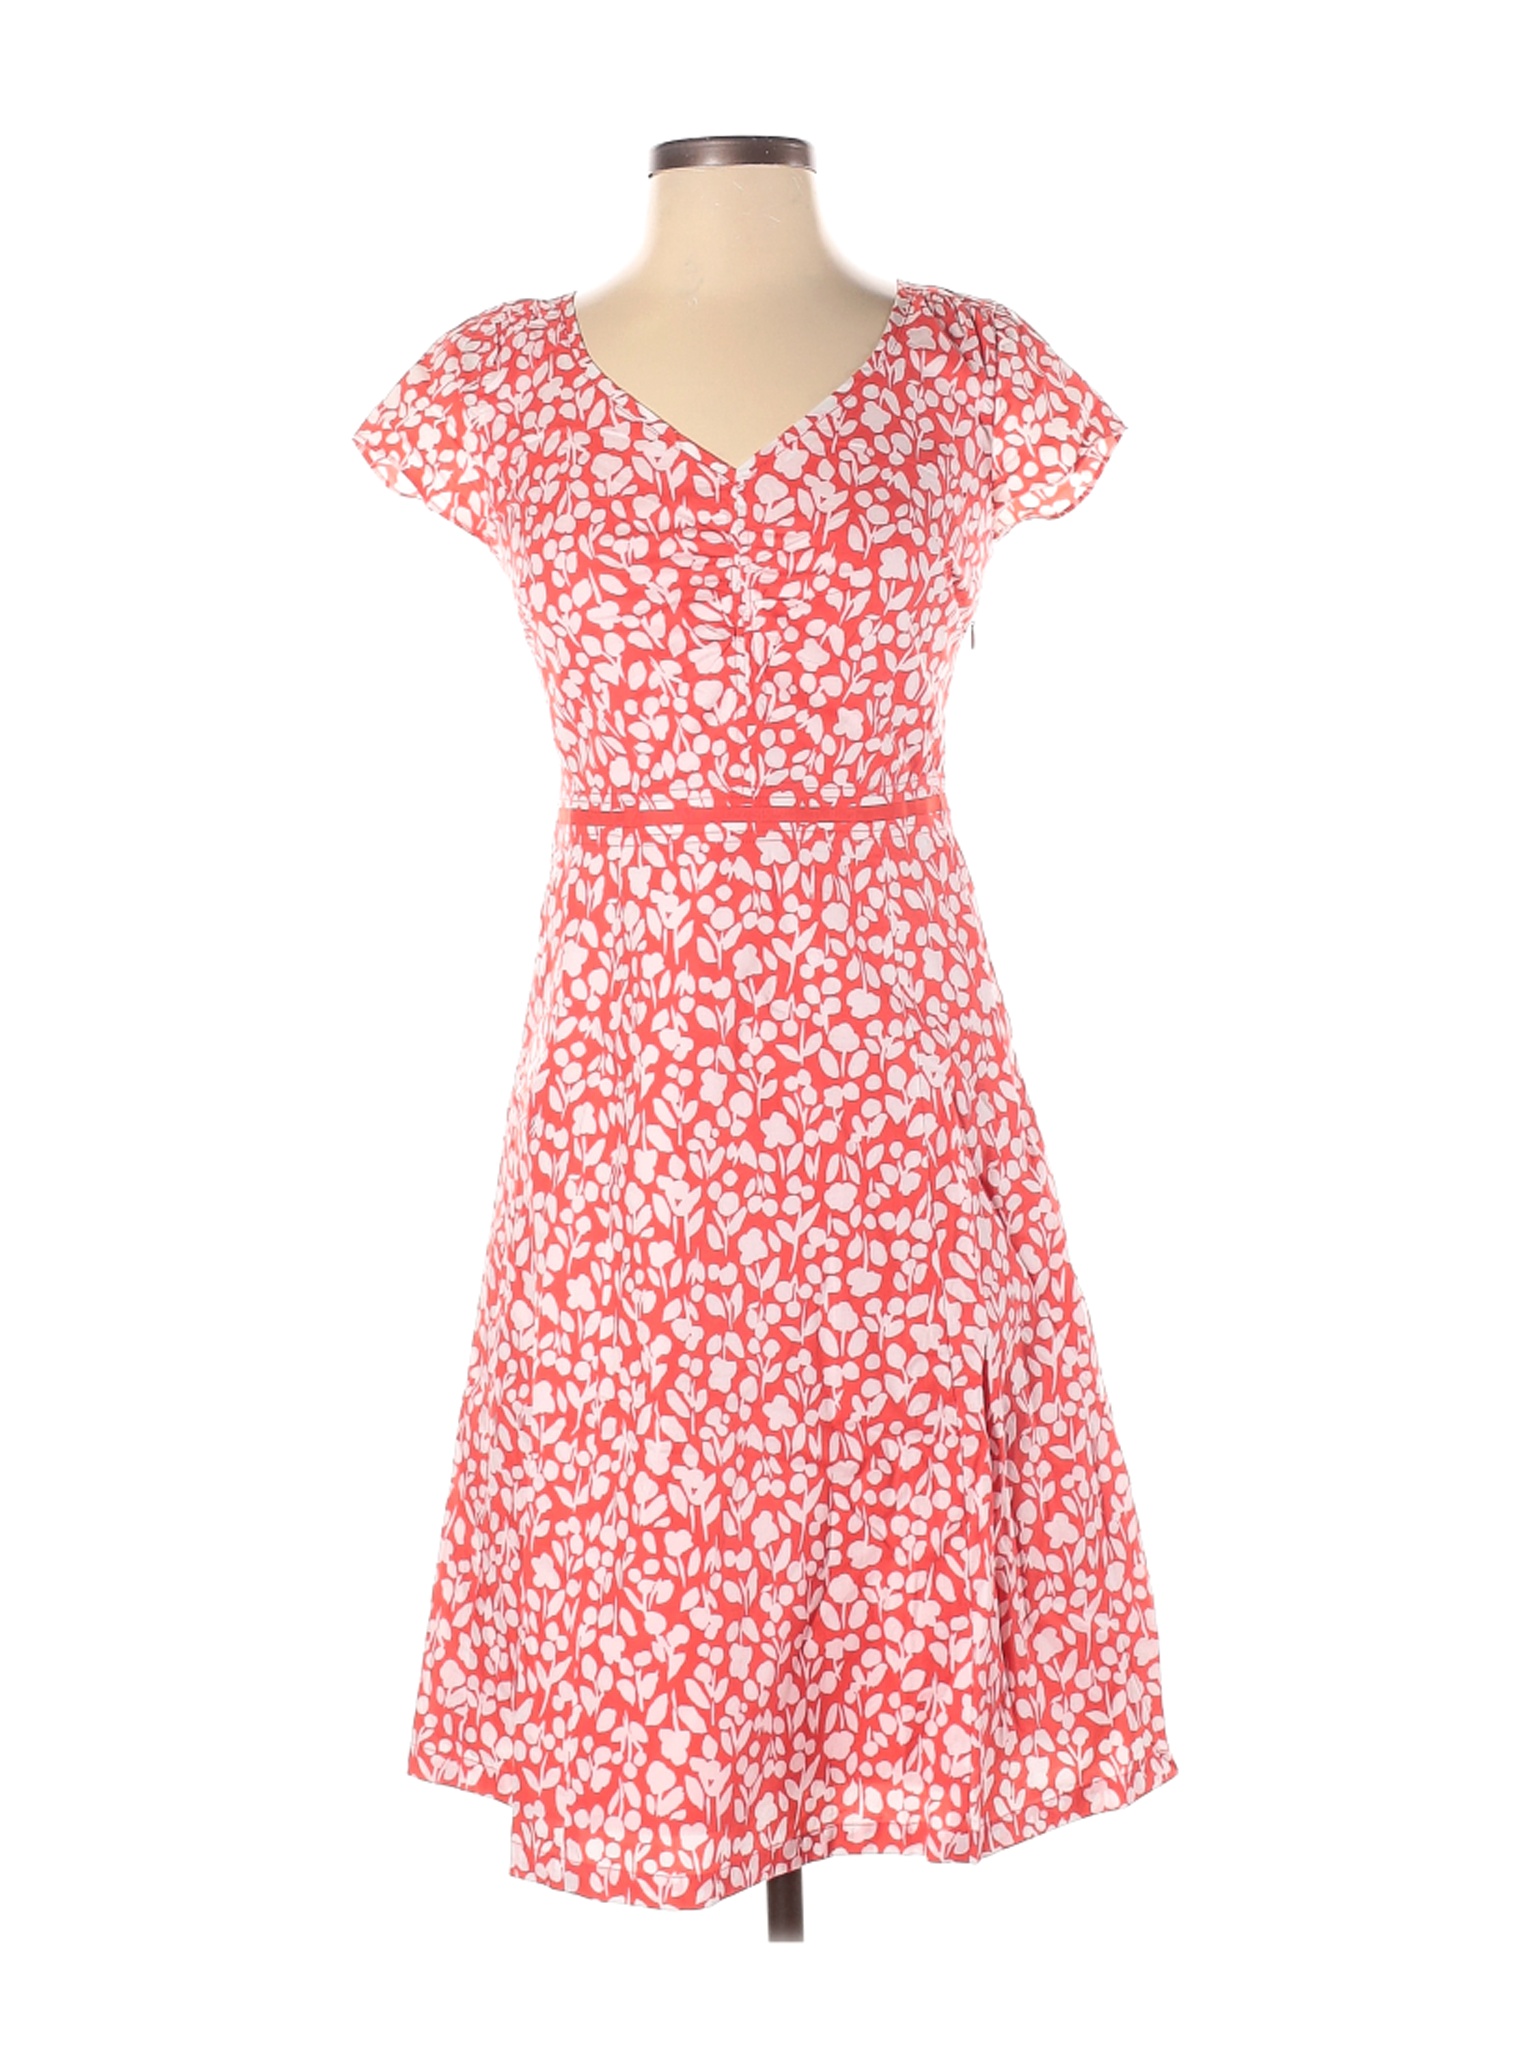 Boden Women Pink Casual Dress 2 | eBay